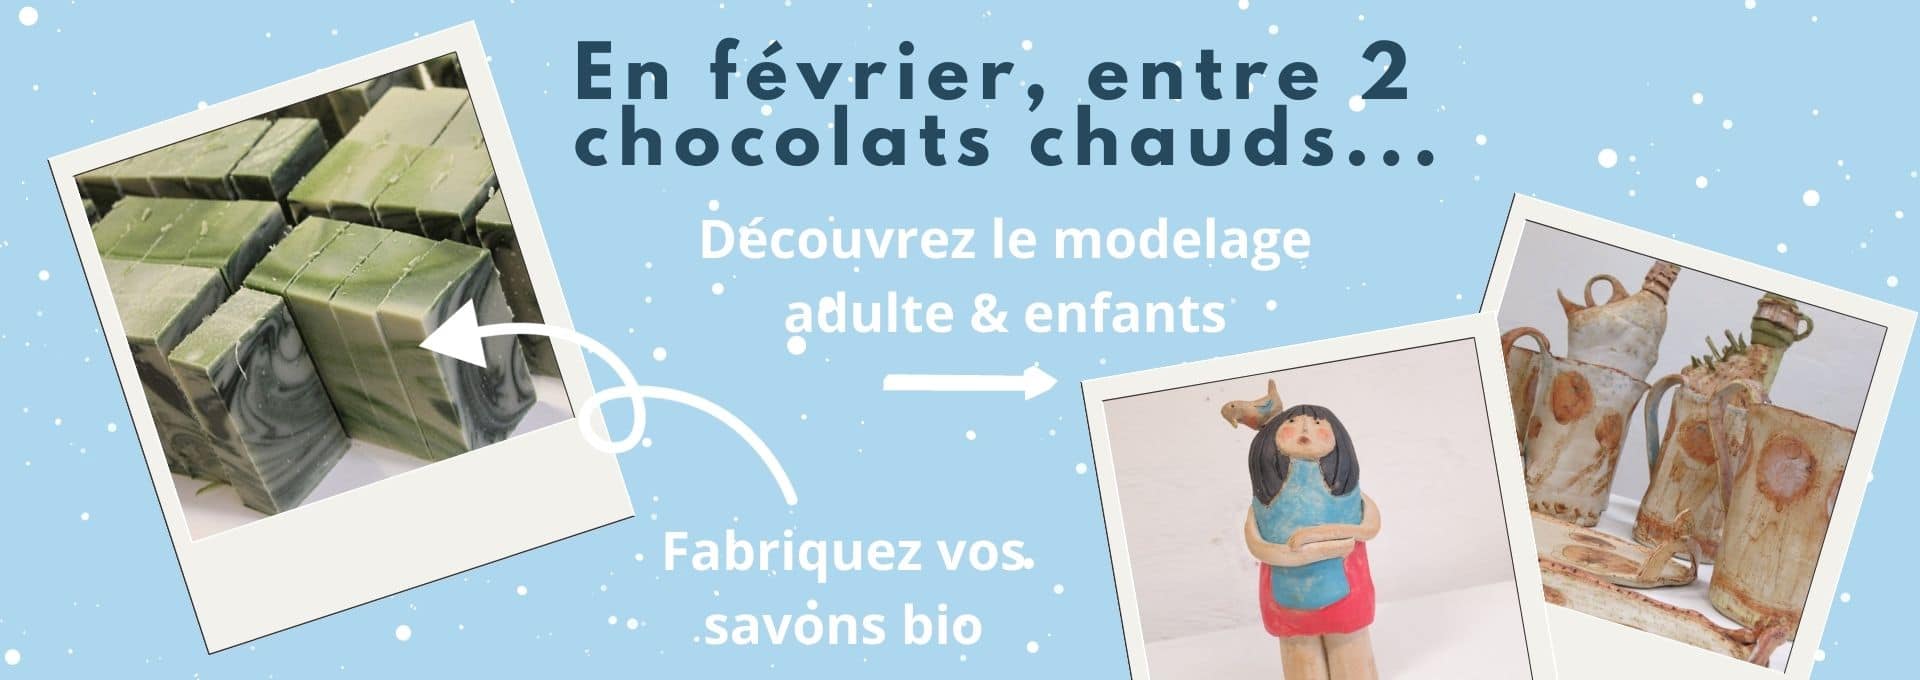 En février, entre 2 chocolats chauds, découvrez le modelage poterie adultes et enfants, fabriquez vos savons bio